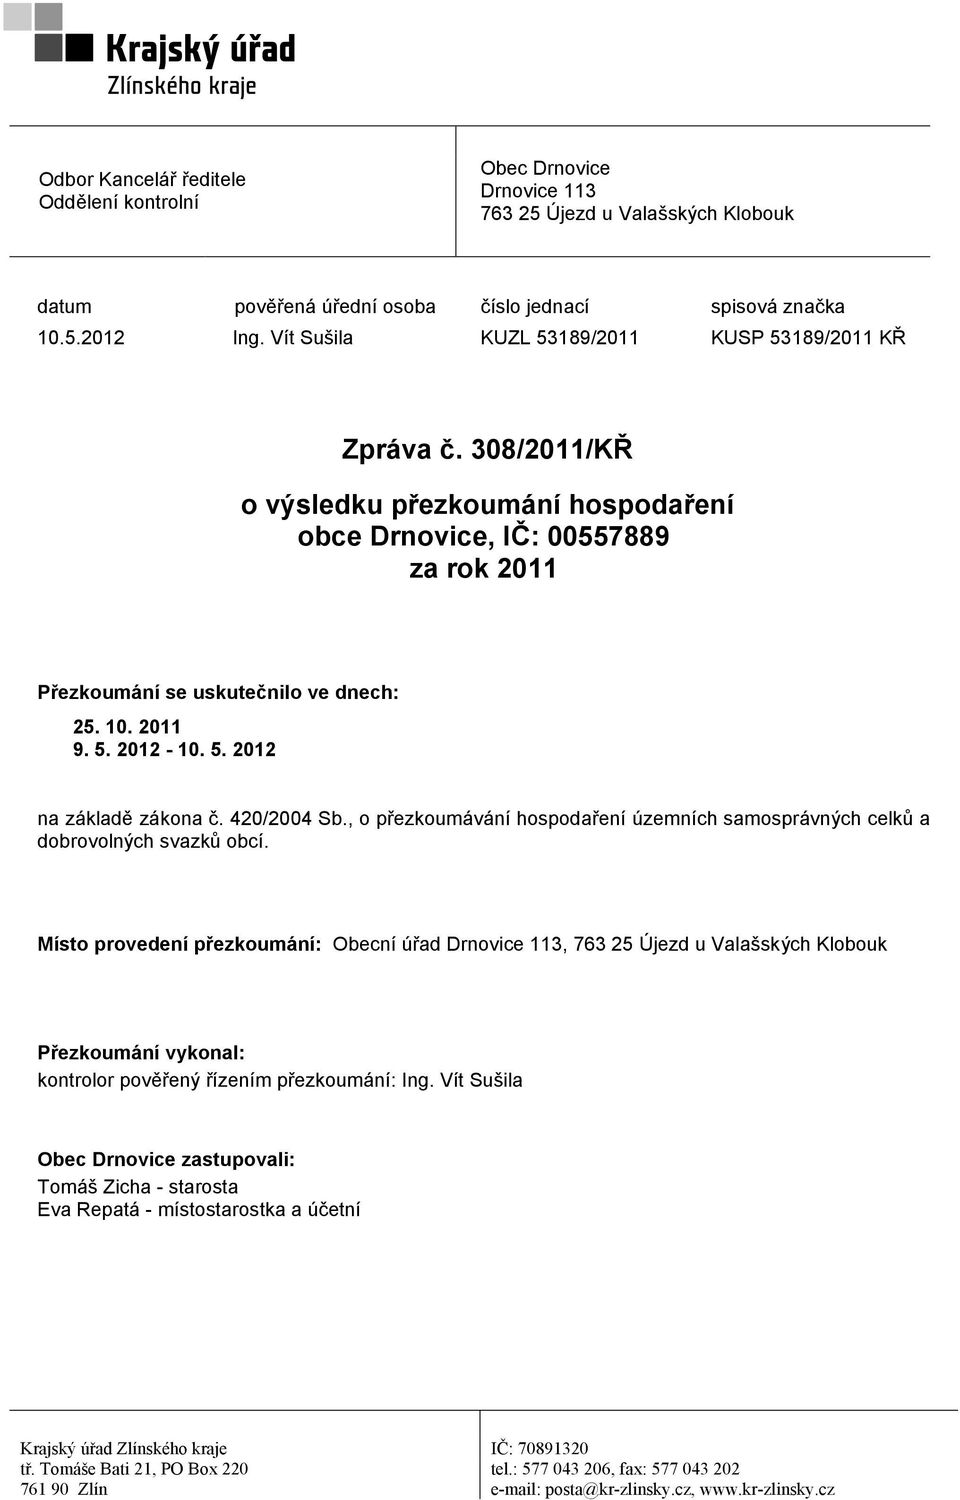 5. 2012 na základě zákona č. 420/2004 Sb., o přezkoumávání hospodaření územních samosprávných celků a dobrovolných svazků obcí.